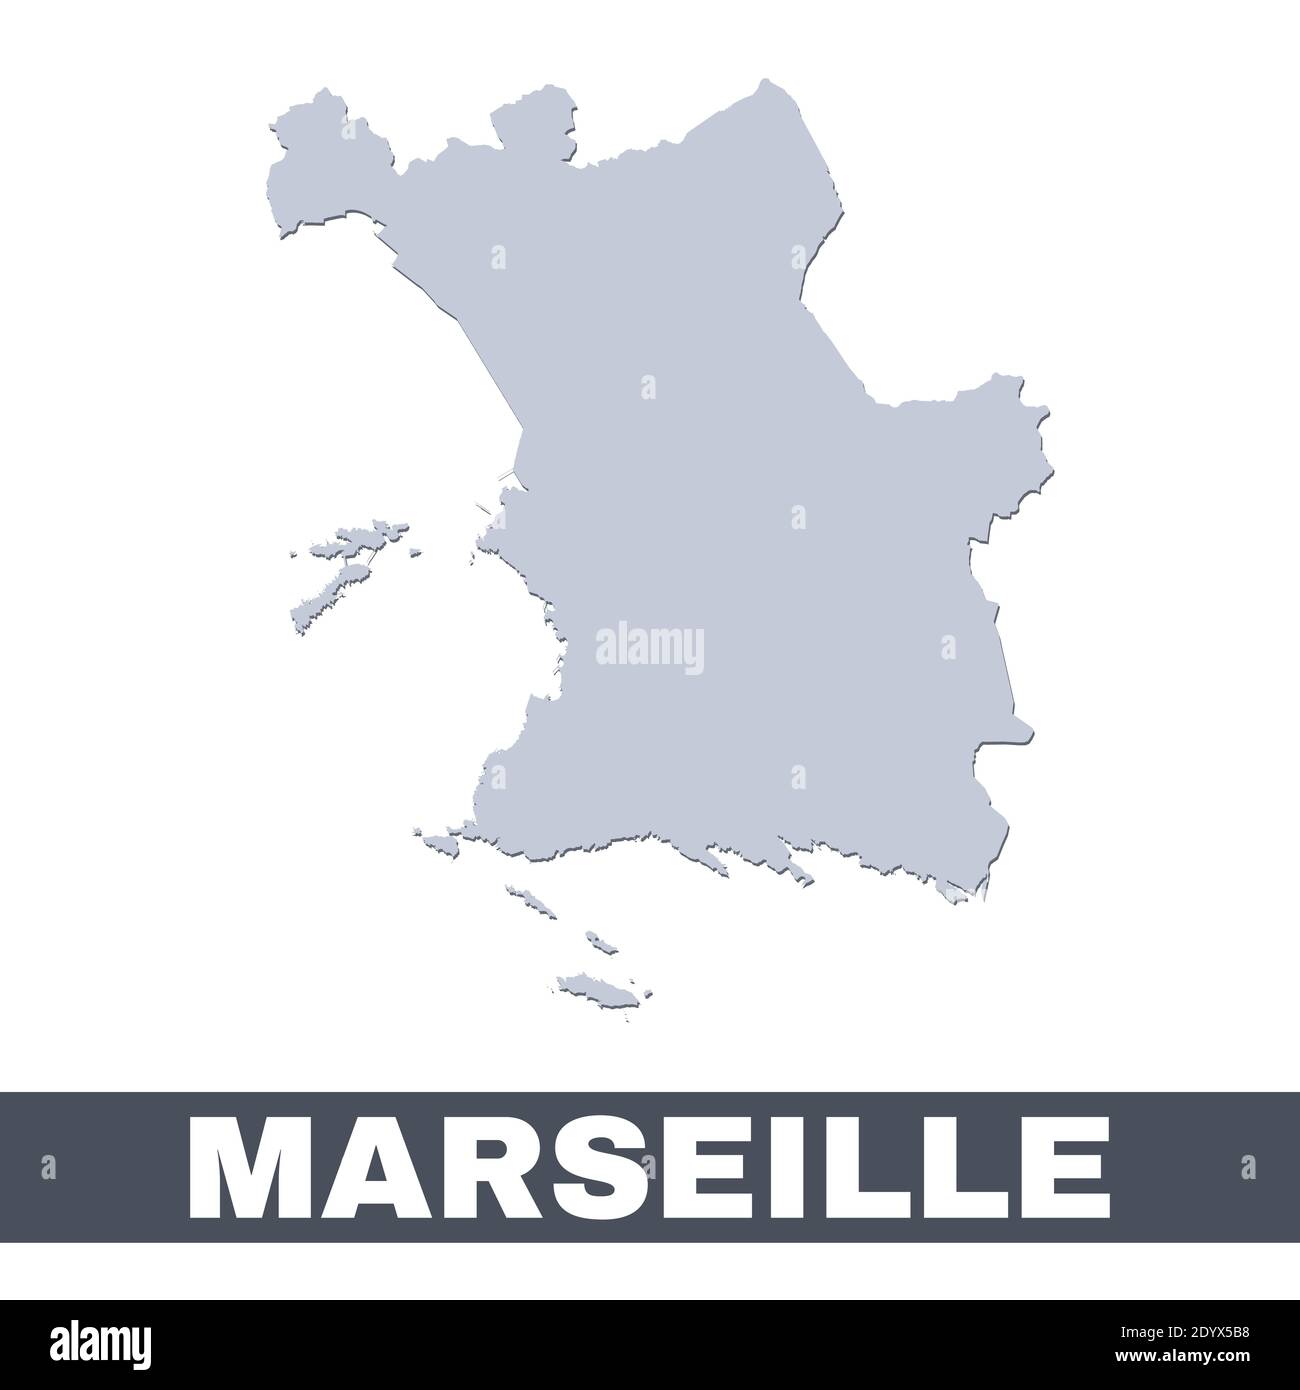 Plan de Marseille. Carte vectorielle de la ville de Marseille à l'intérieur de ses frontières. Gris avec ombre sur fond blanc. Illustration isolée. Illustration de Vecteur